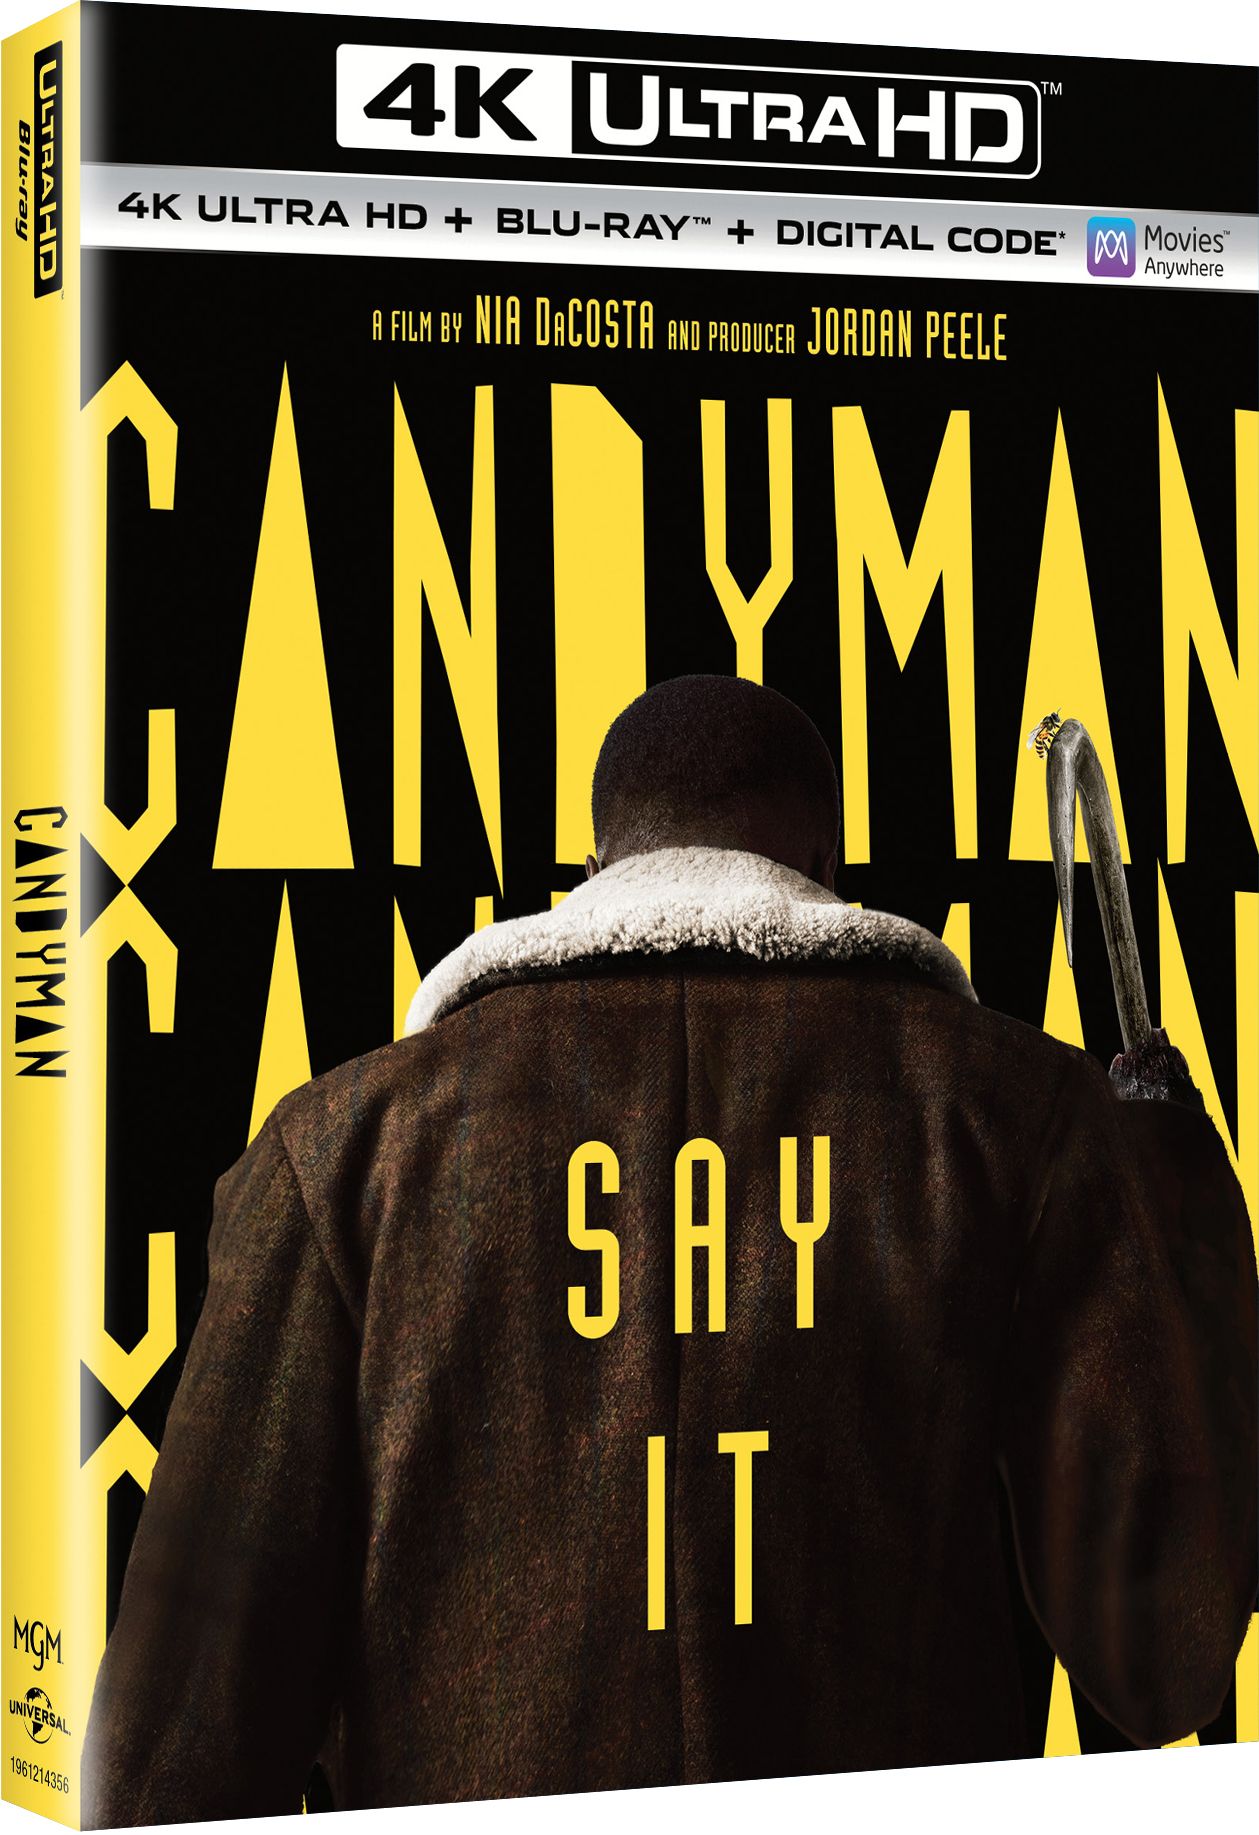 Candyman Blu-ray 4K